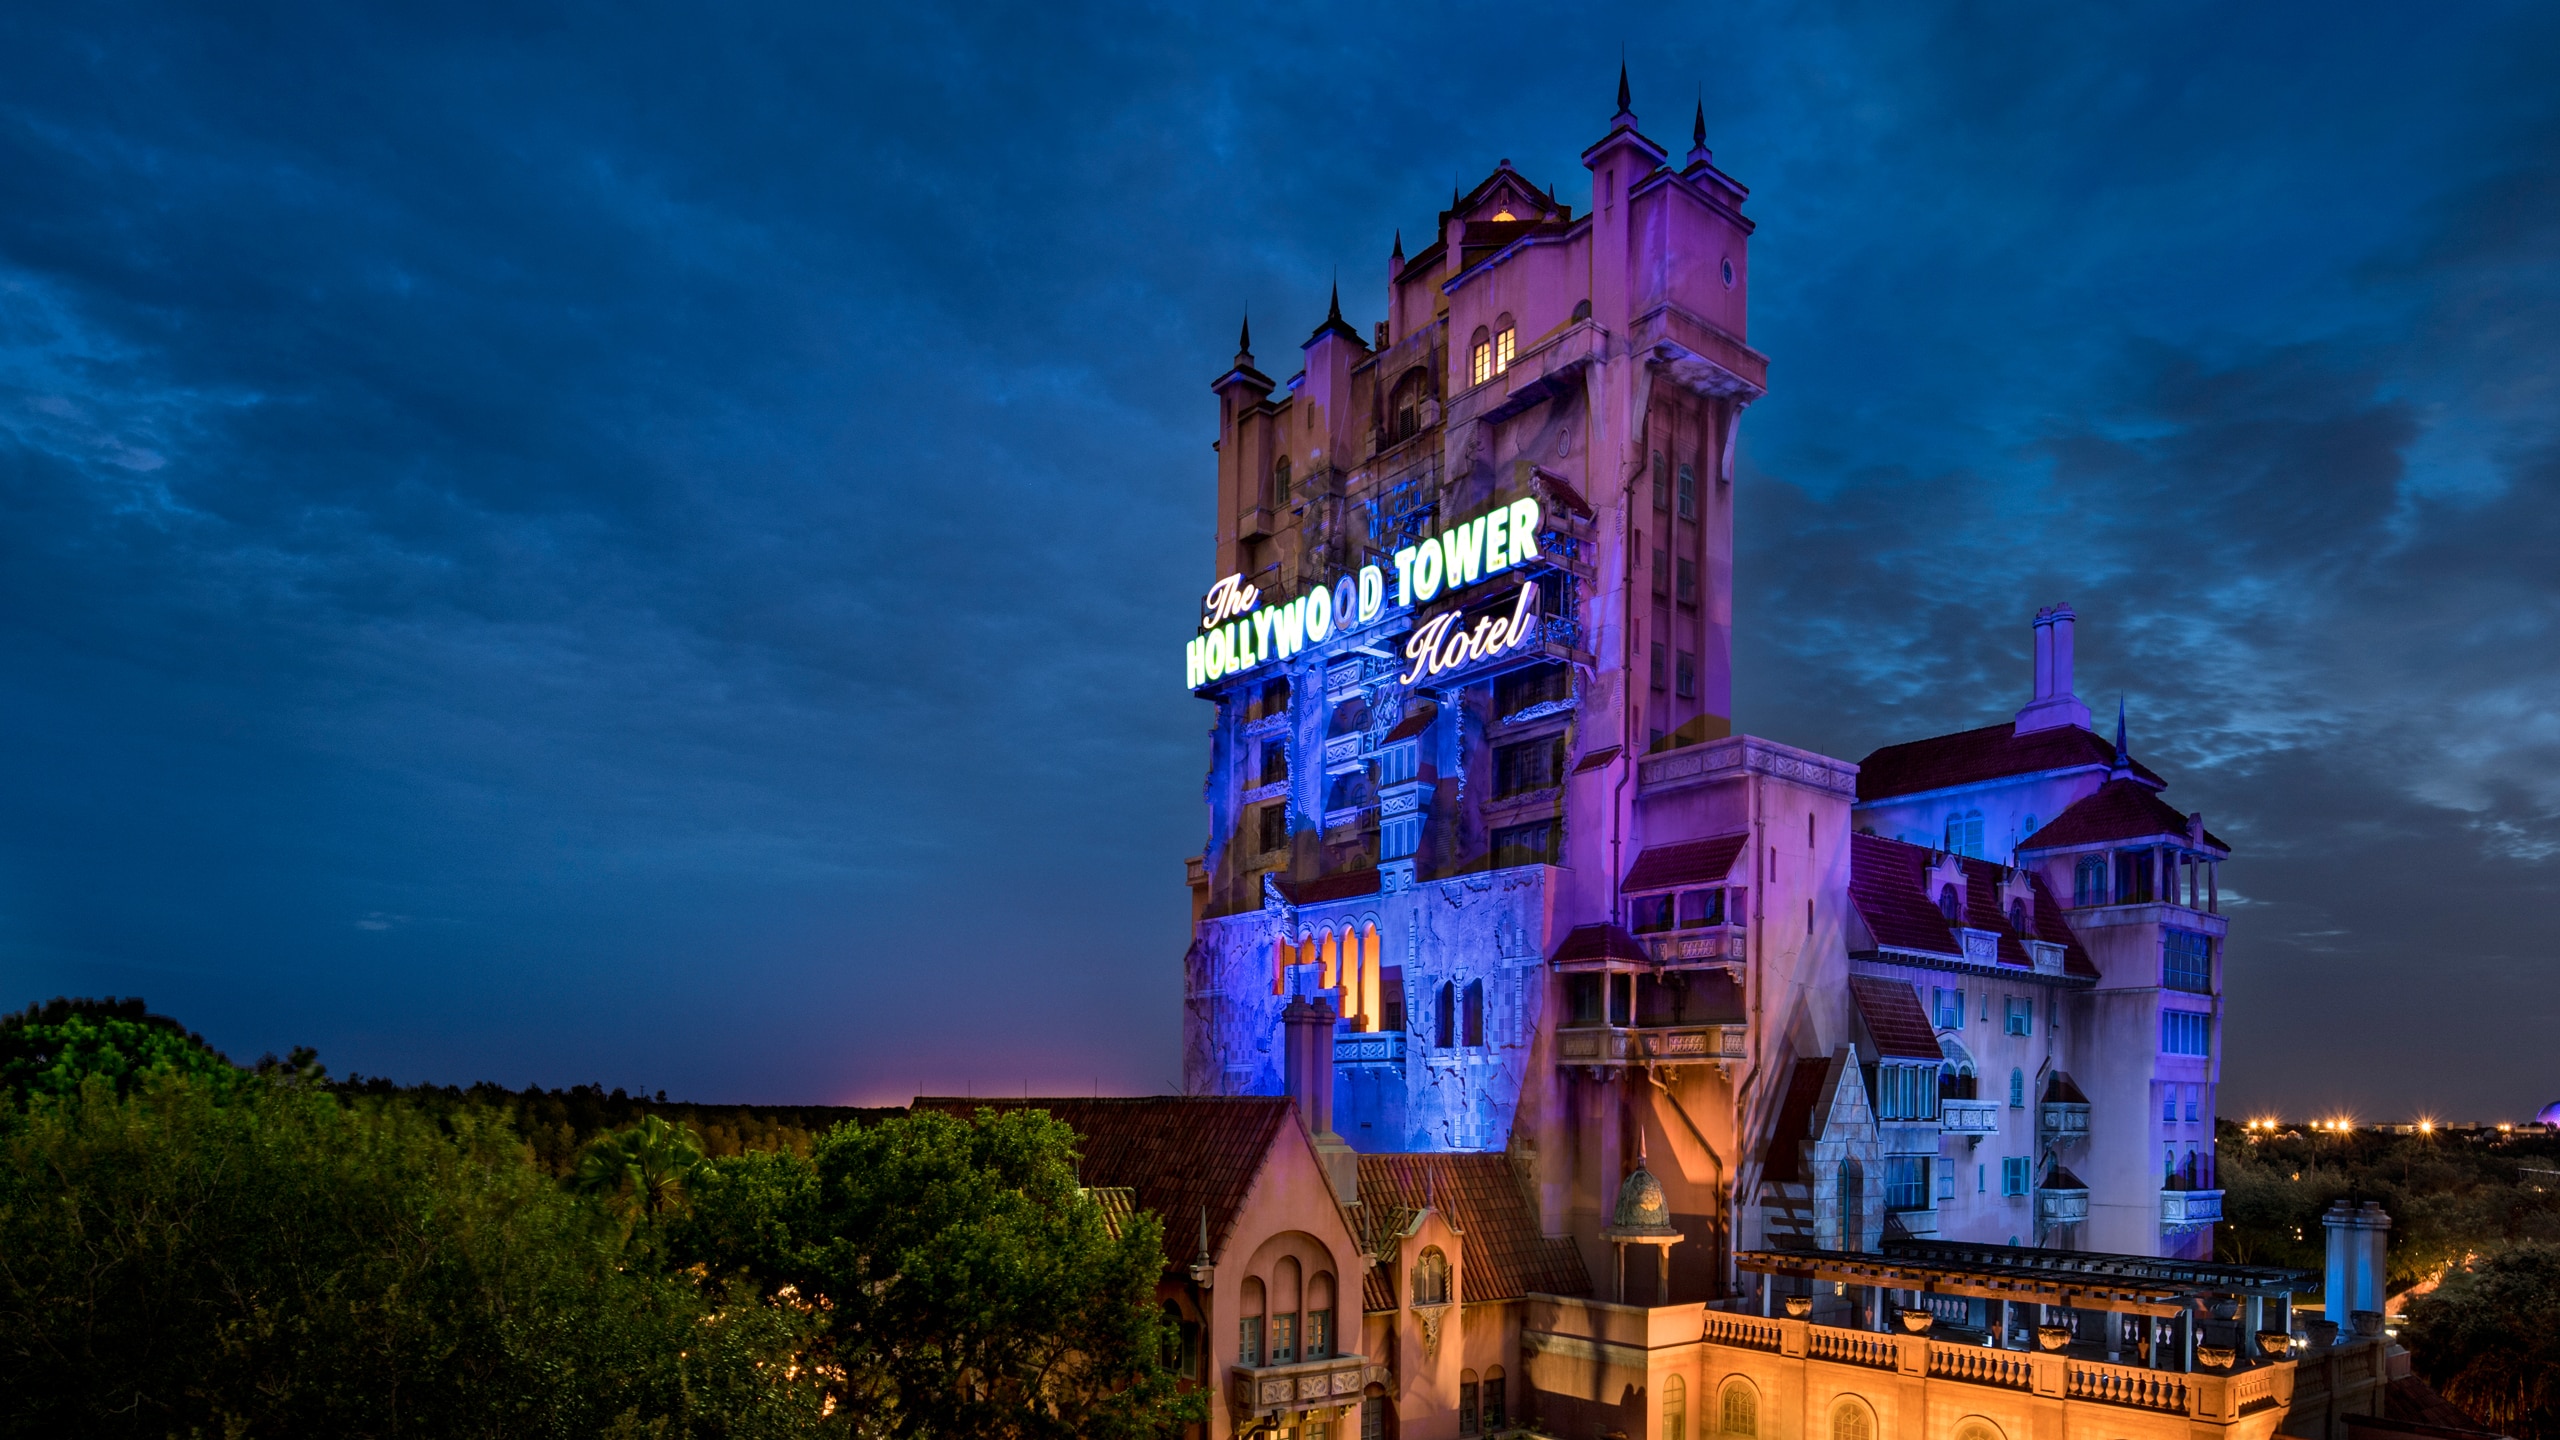 ディズニー・ハリウッド・スタジオのトワイライトゾーン・タワー・オブ・テラーがある夜景